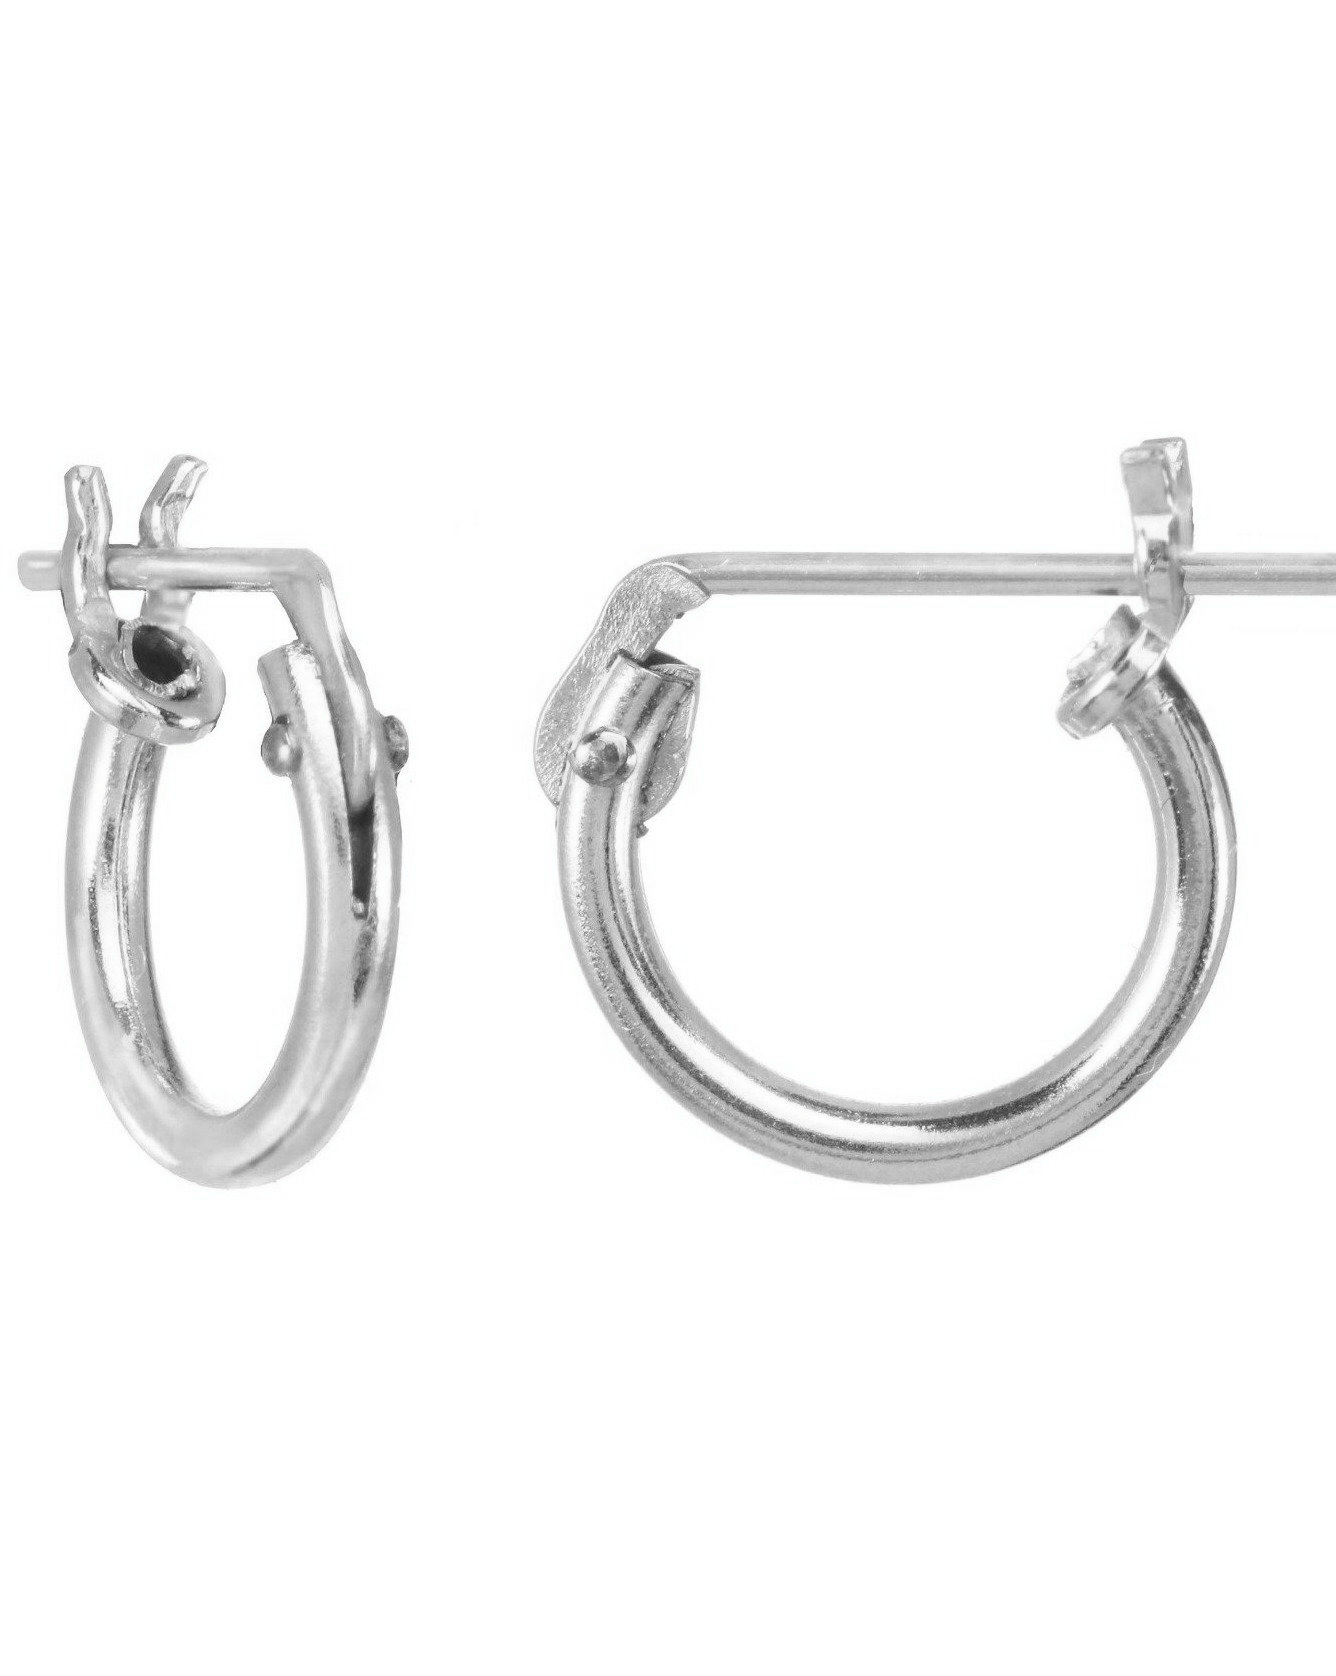 Thin Micro Hoop Earrings by KOZAKH. 12mm snap closure hoop earrings, crafted in Sterling Silver.